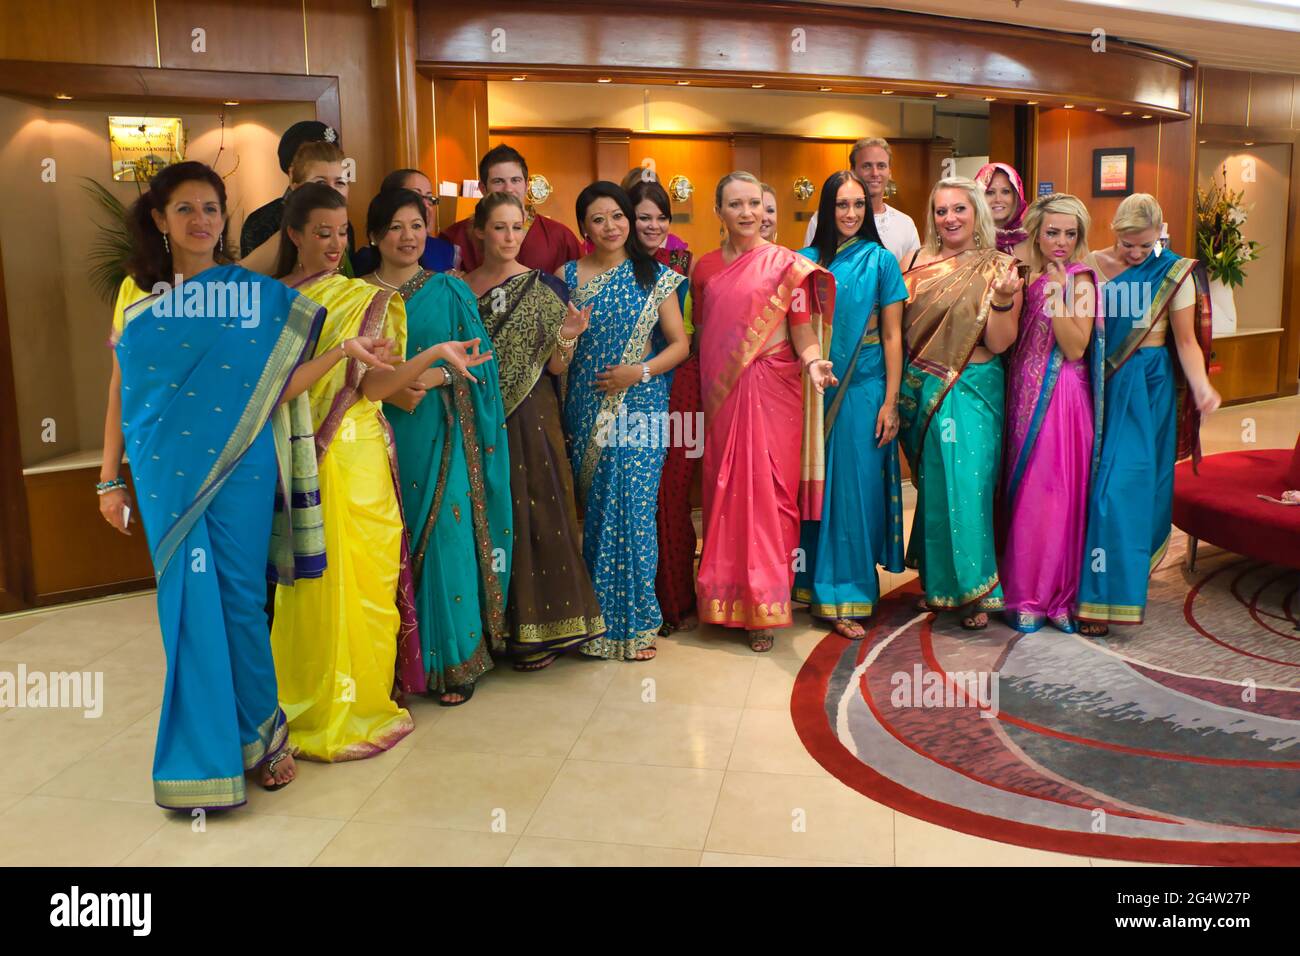 Un groupe de femmes élégantes toutes vêtues de différentes couleurs saris pour une nuit indienne à bord d'un bateau de croisière Banque D'Images